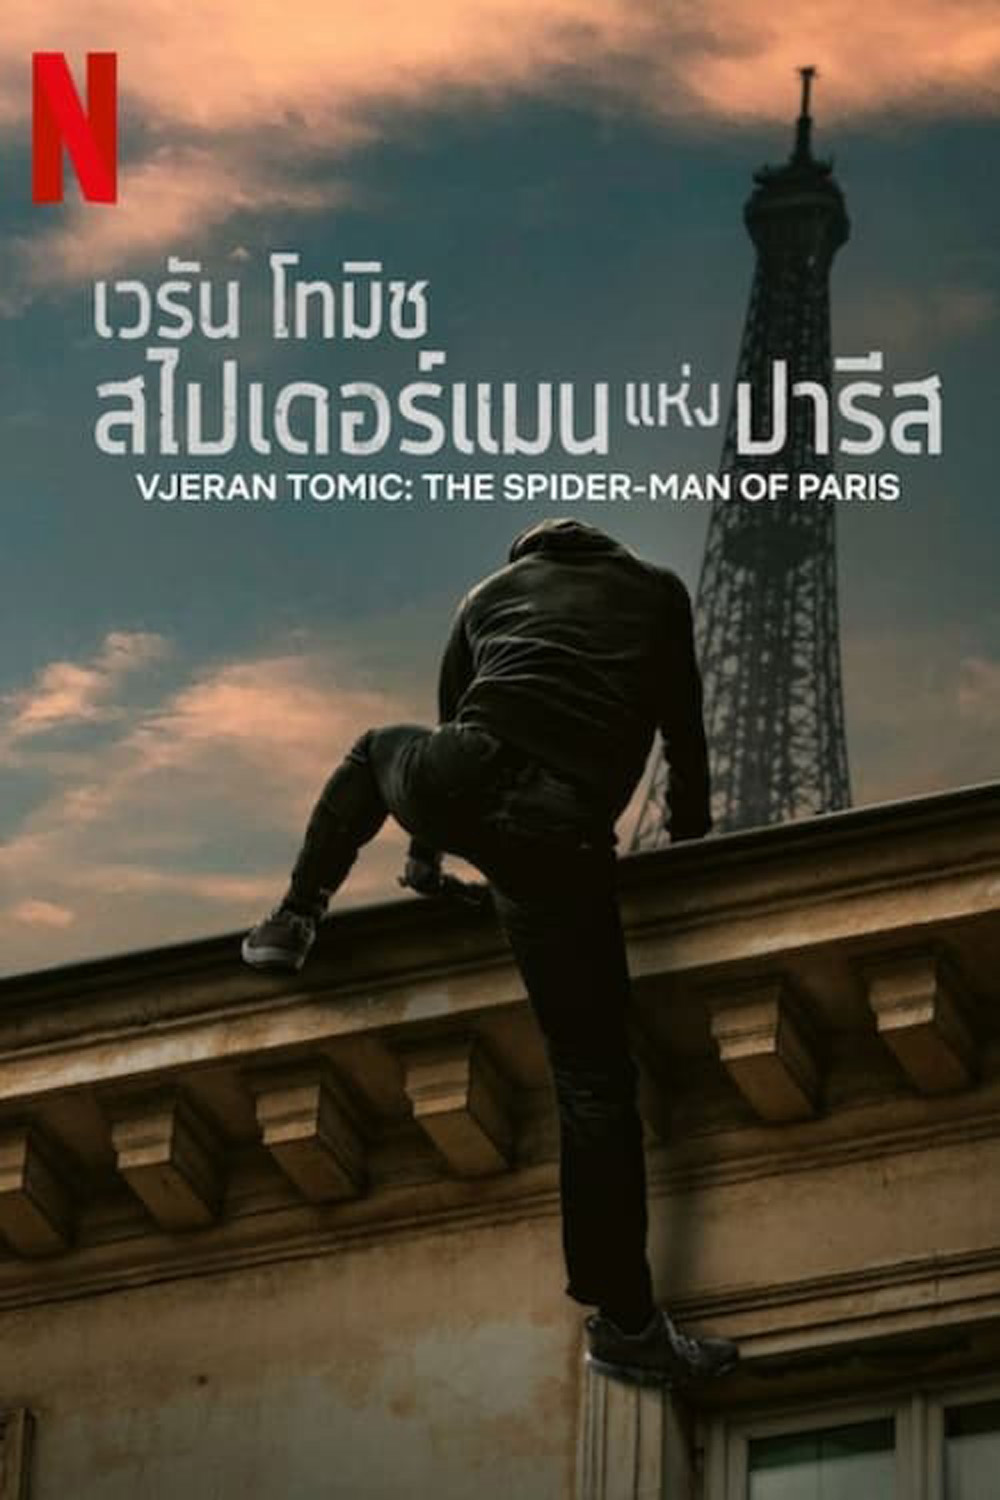 ดูหนังออนไลน์ฟรี Vjeran Tomic The Spider Man of Paris เวรัน โทมิช สไปเดอร์แมนแห่งปารีส 2023 พากย์ไทย